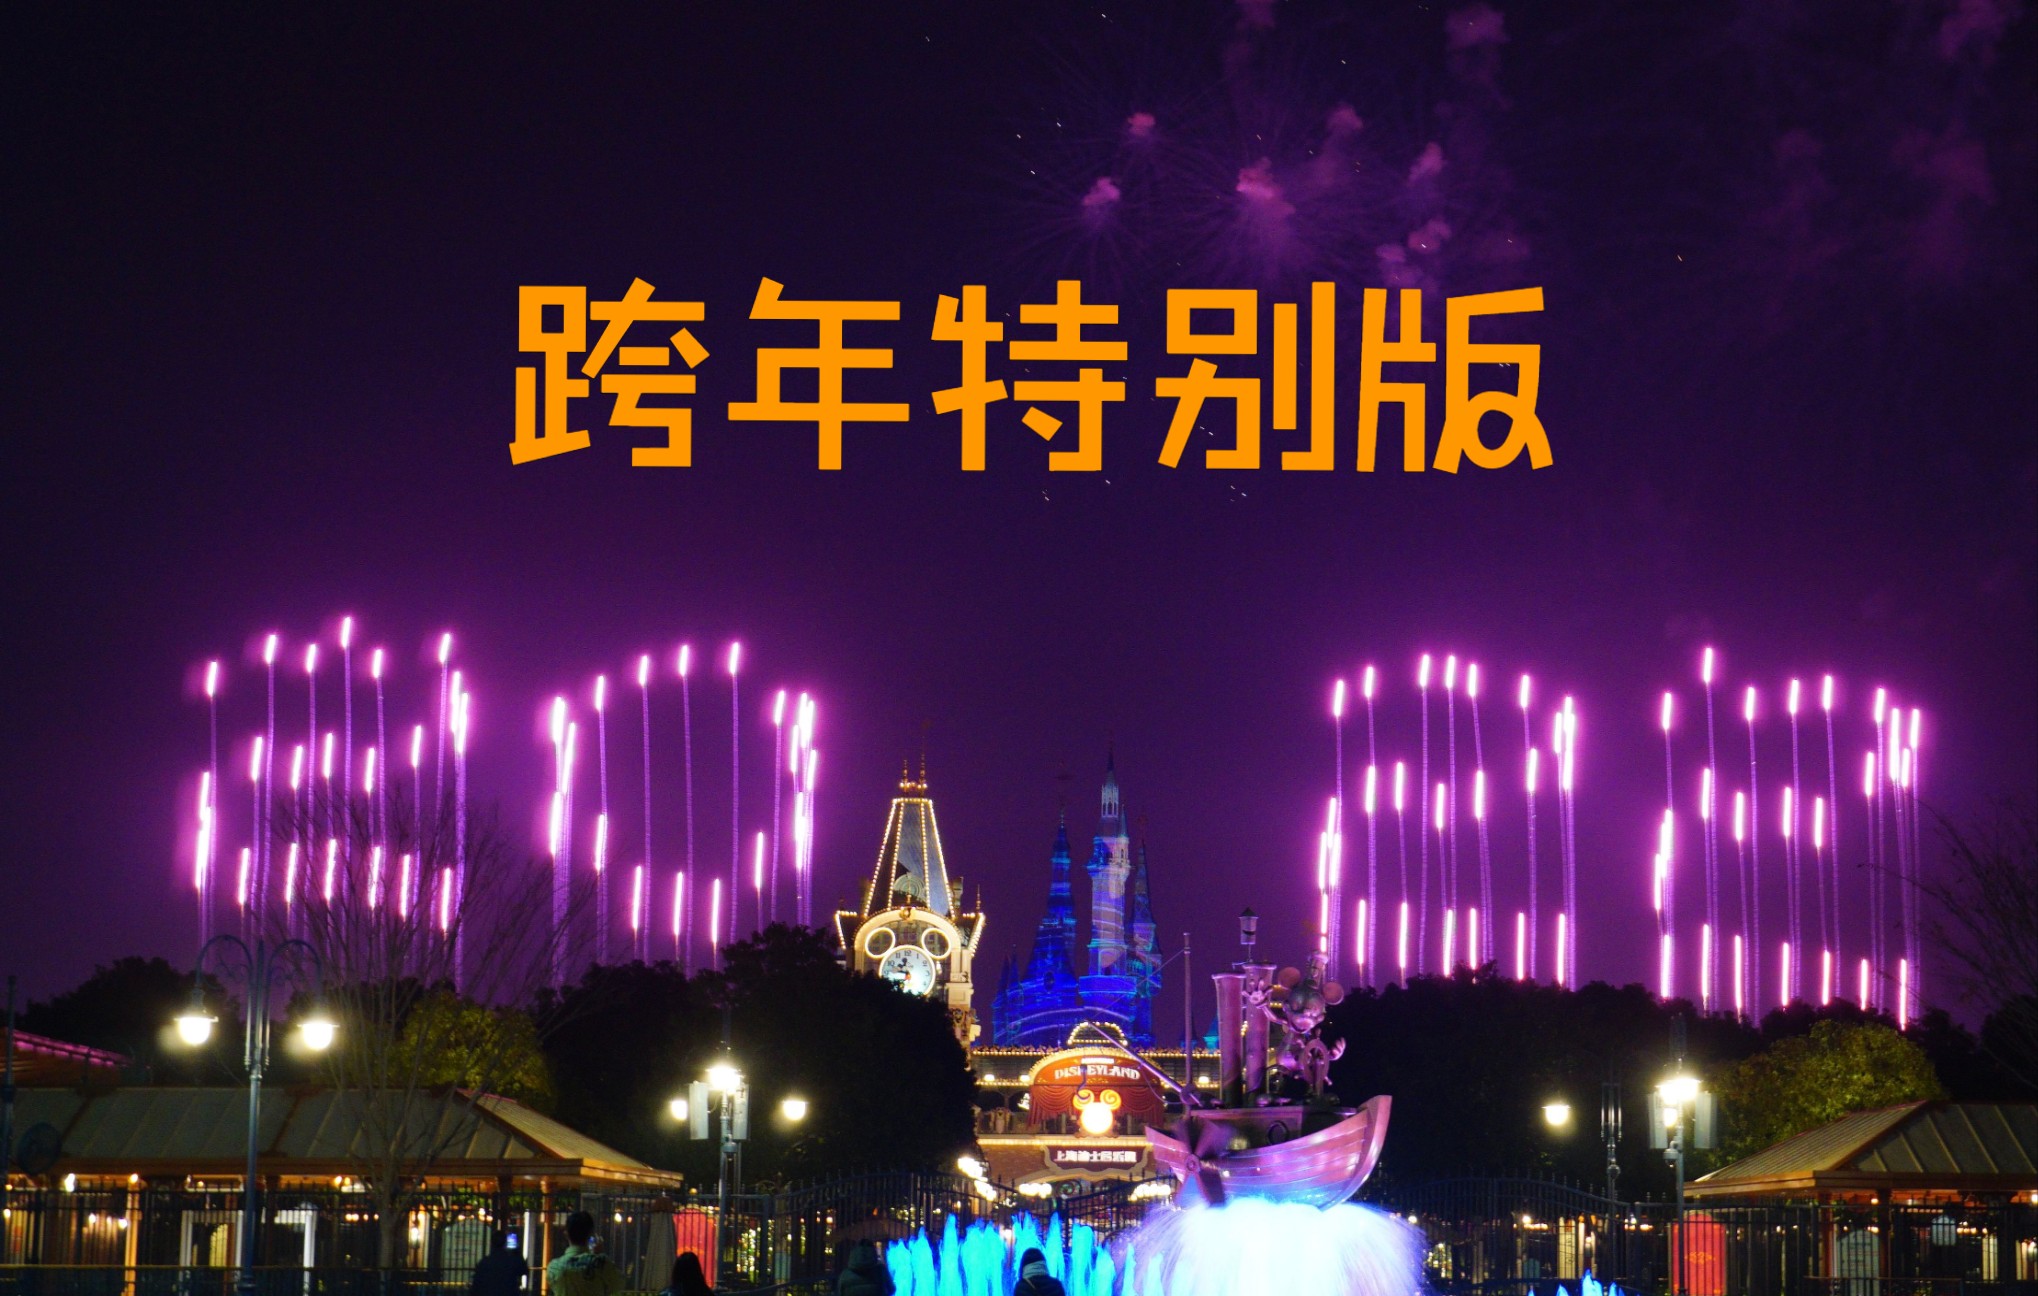 上海迪士尼点亮新一年跨年特别烟花抢先看2021